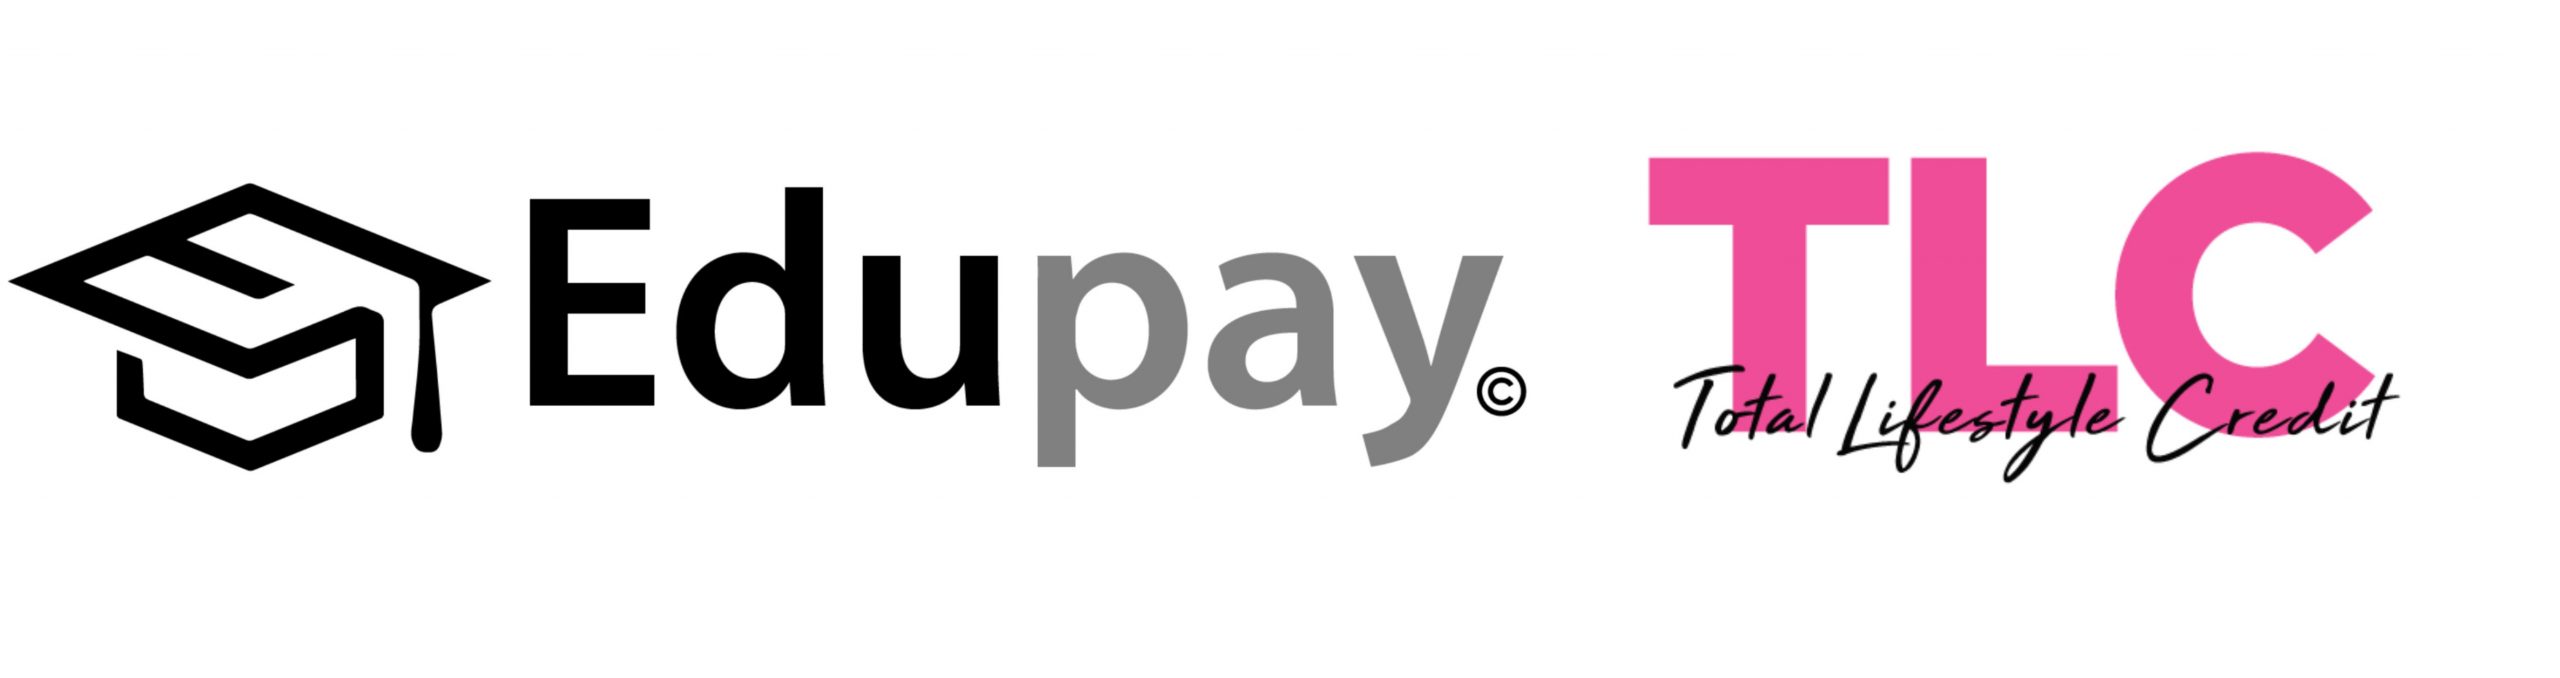 Edupay Logo